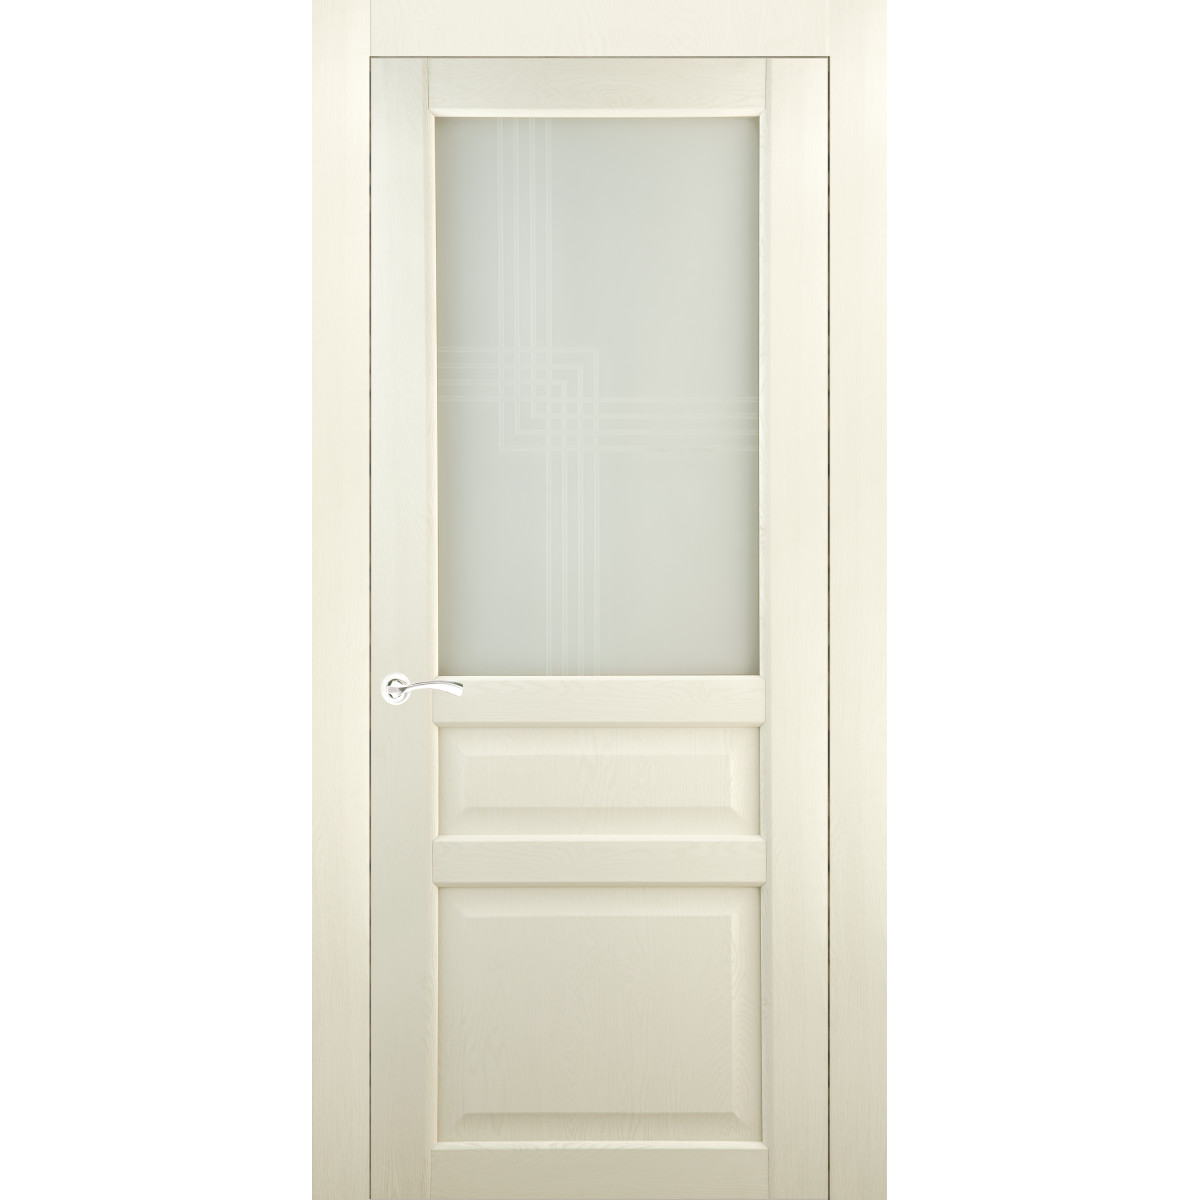 Дверь межкомнатная остеклённая Artens Мария 90x200 см, ПВХ, цвет айвори, с замком в комплекте